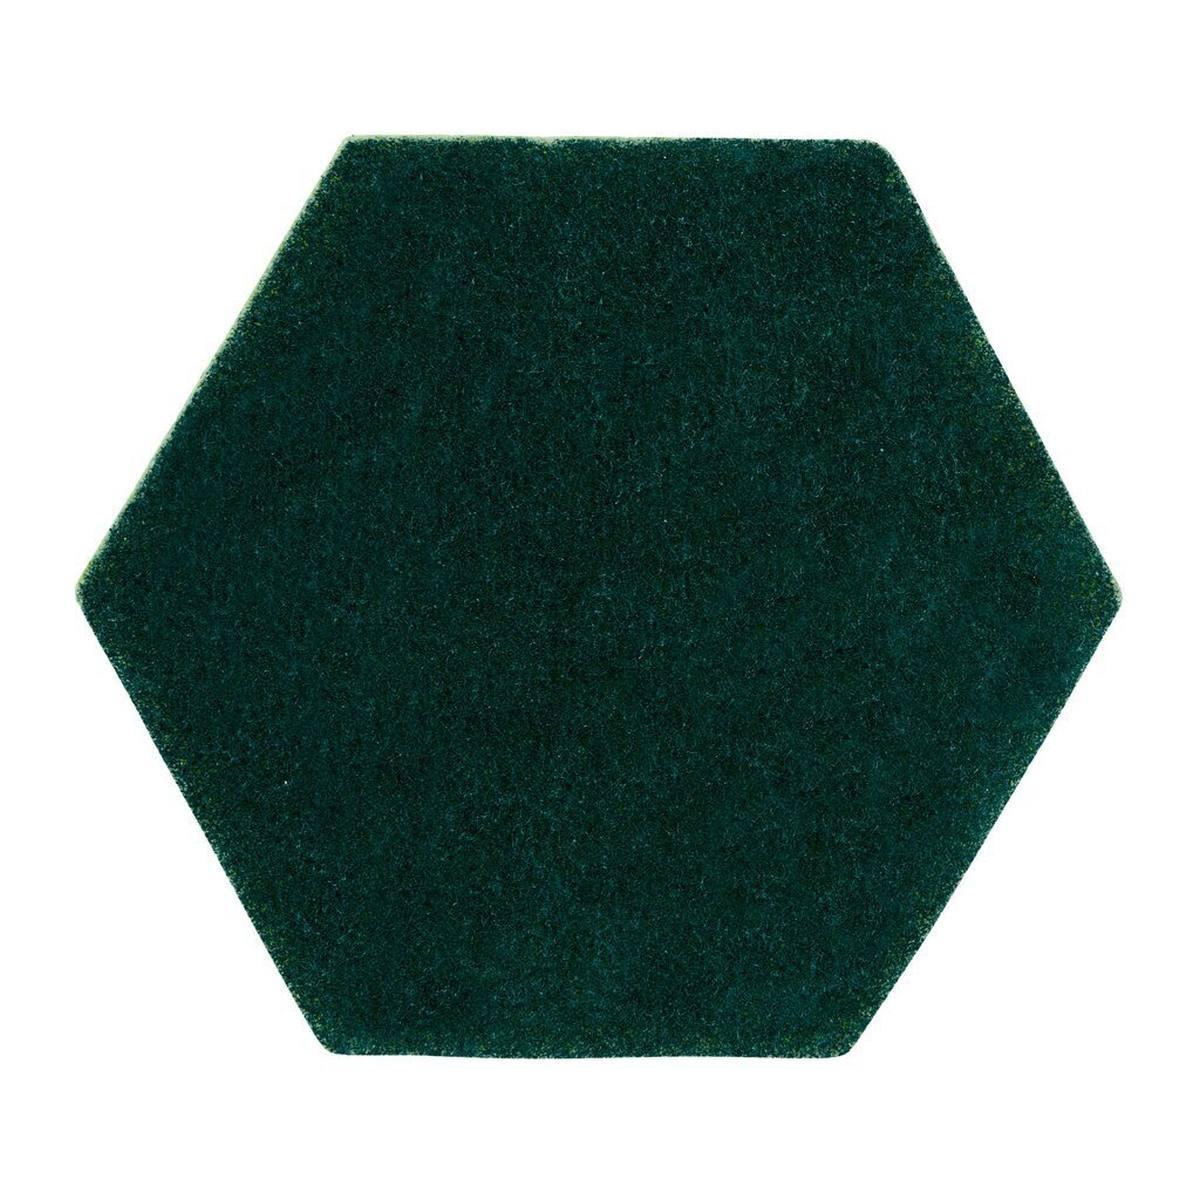 3M Scotch-Brite 2-in-1 Handpad 96HEX, grün/gelb, 147 mm x 127 mm